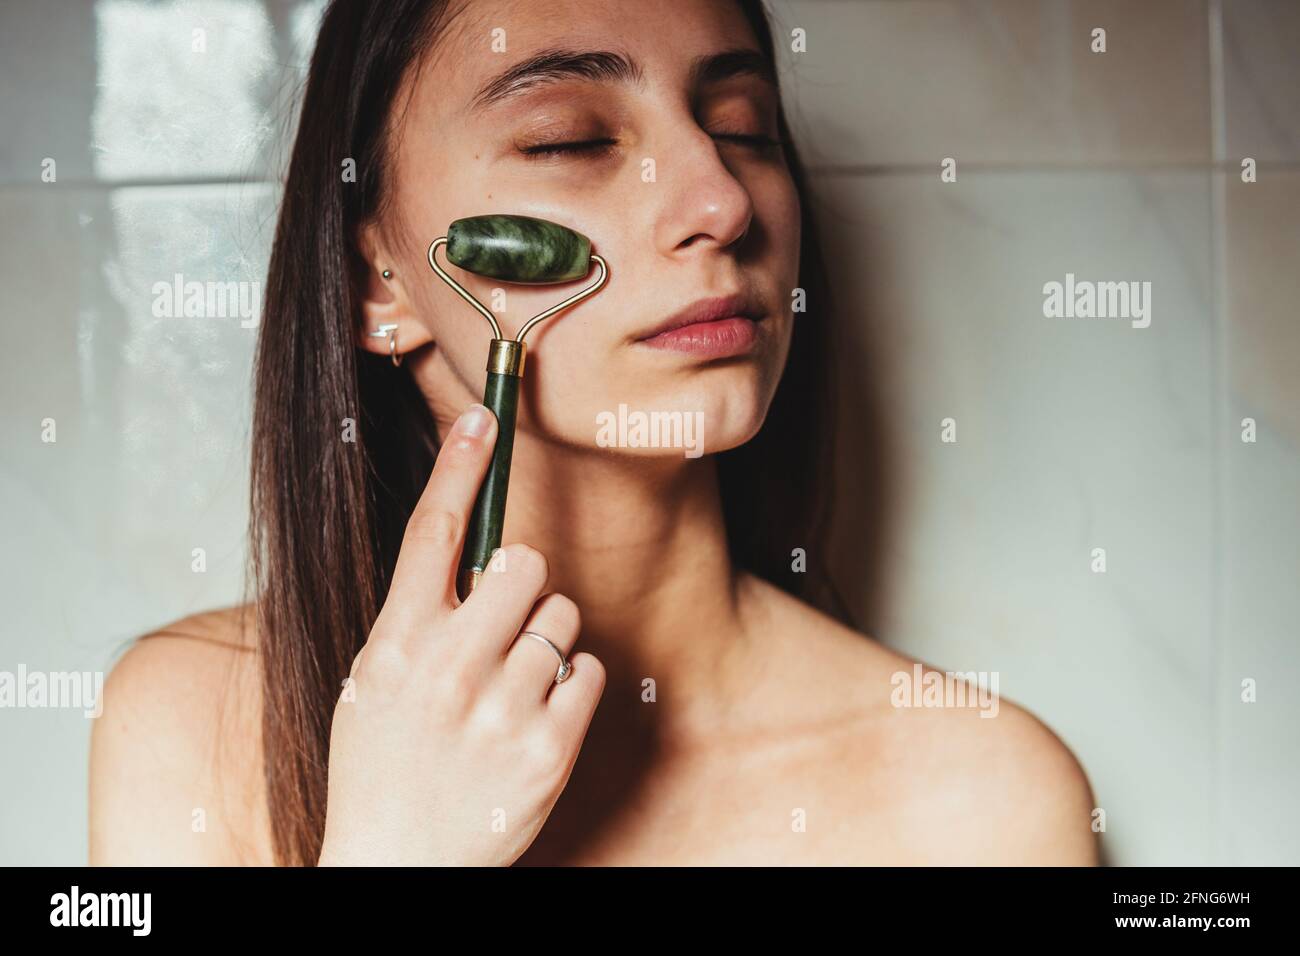 Raccolto concentrato giovane femmina con occhi chiusi massaggiando guancia con rullo jade contro parete in ceramica Foto Stock